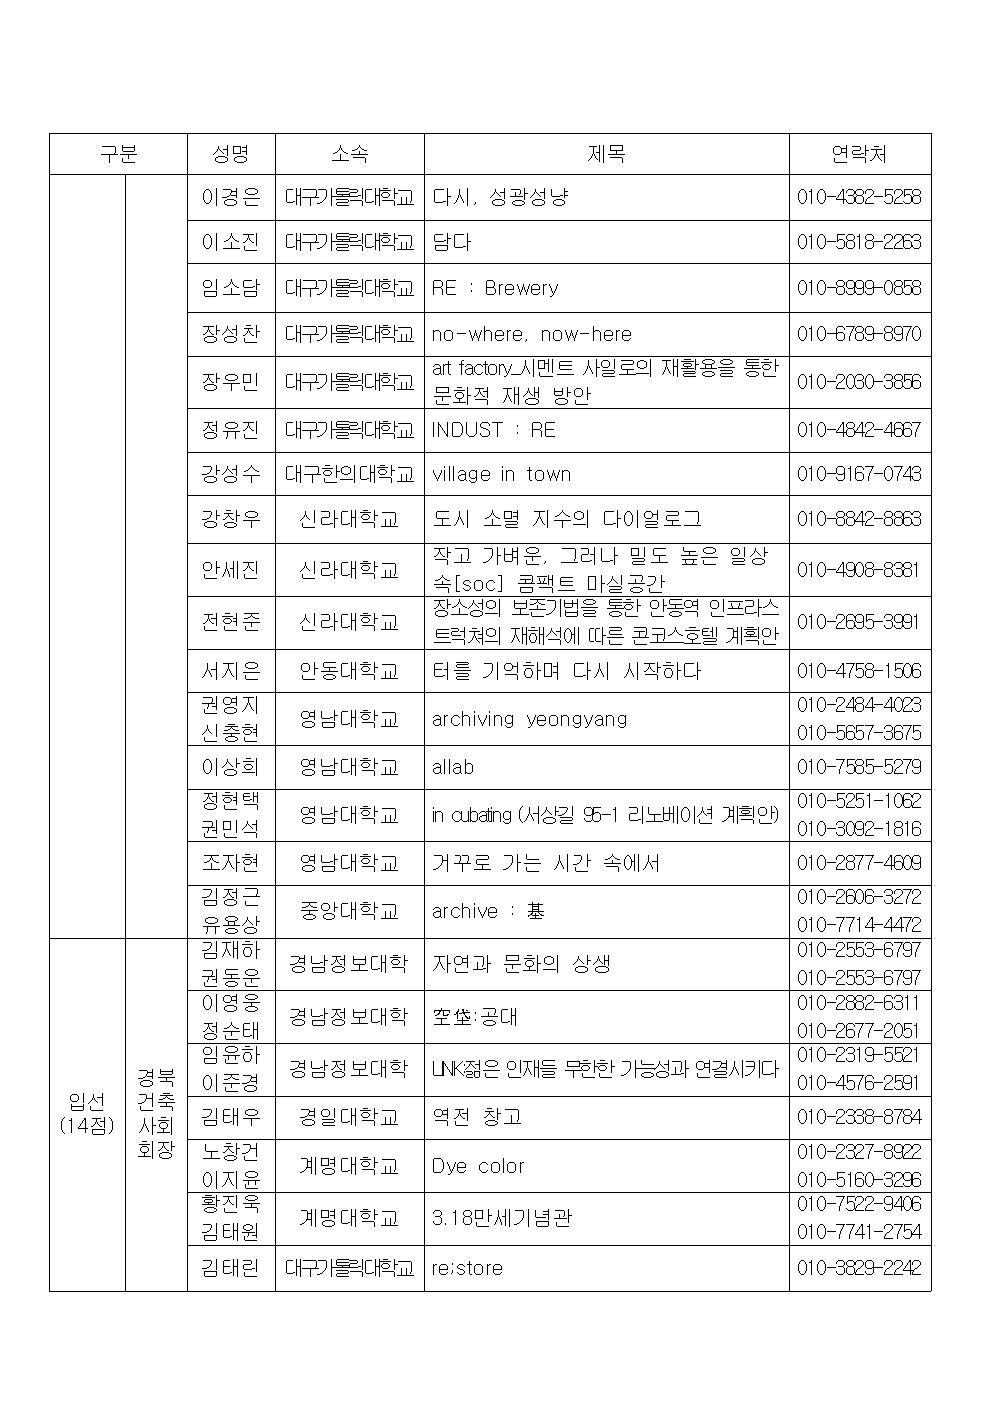 2020경상북도건축문화제 공모전 심사결과 알림 - 복사본004.jpg